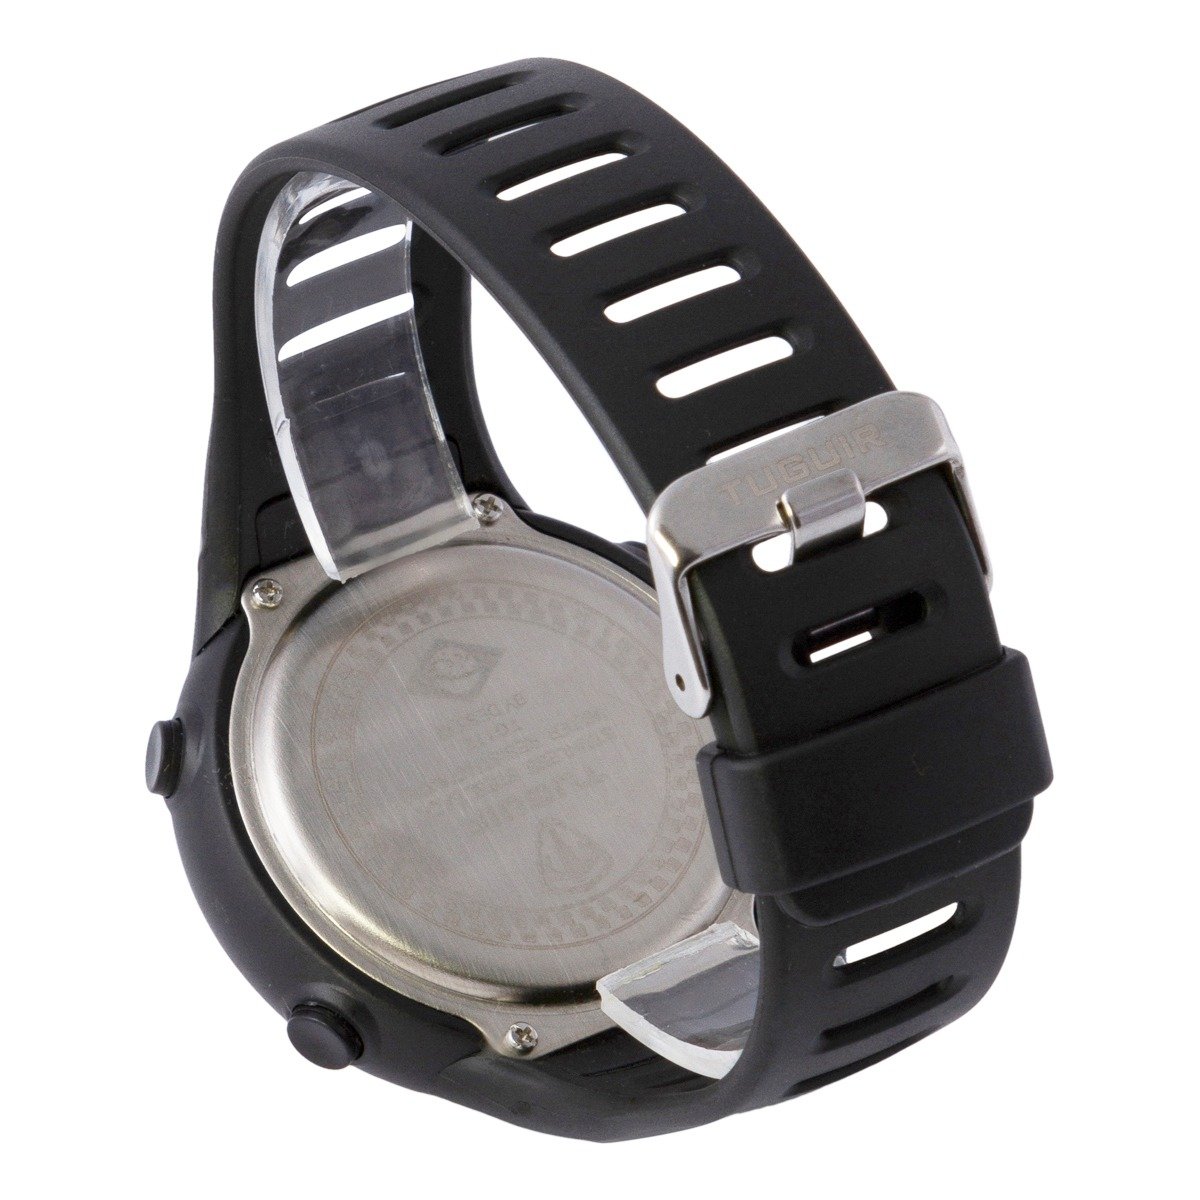 Relógio Masculino Tuguir Digital TG123 - Preto e Prata Preto 3